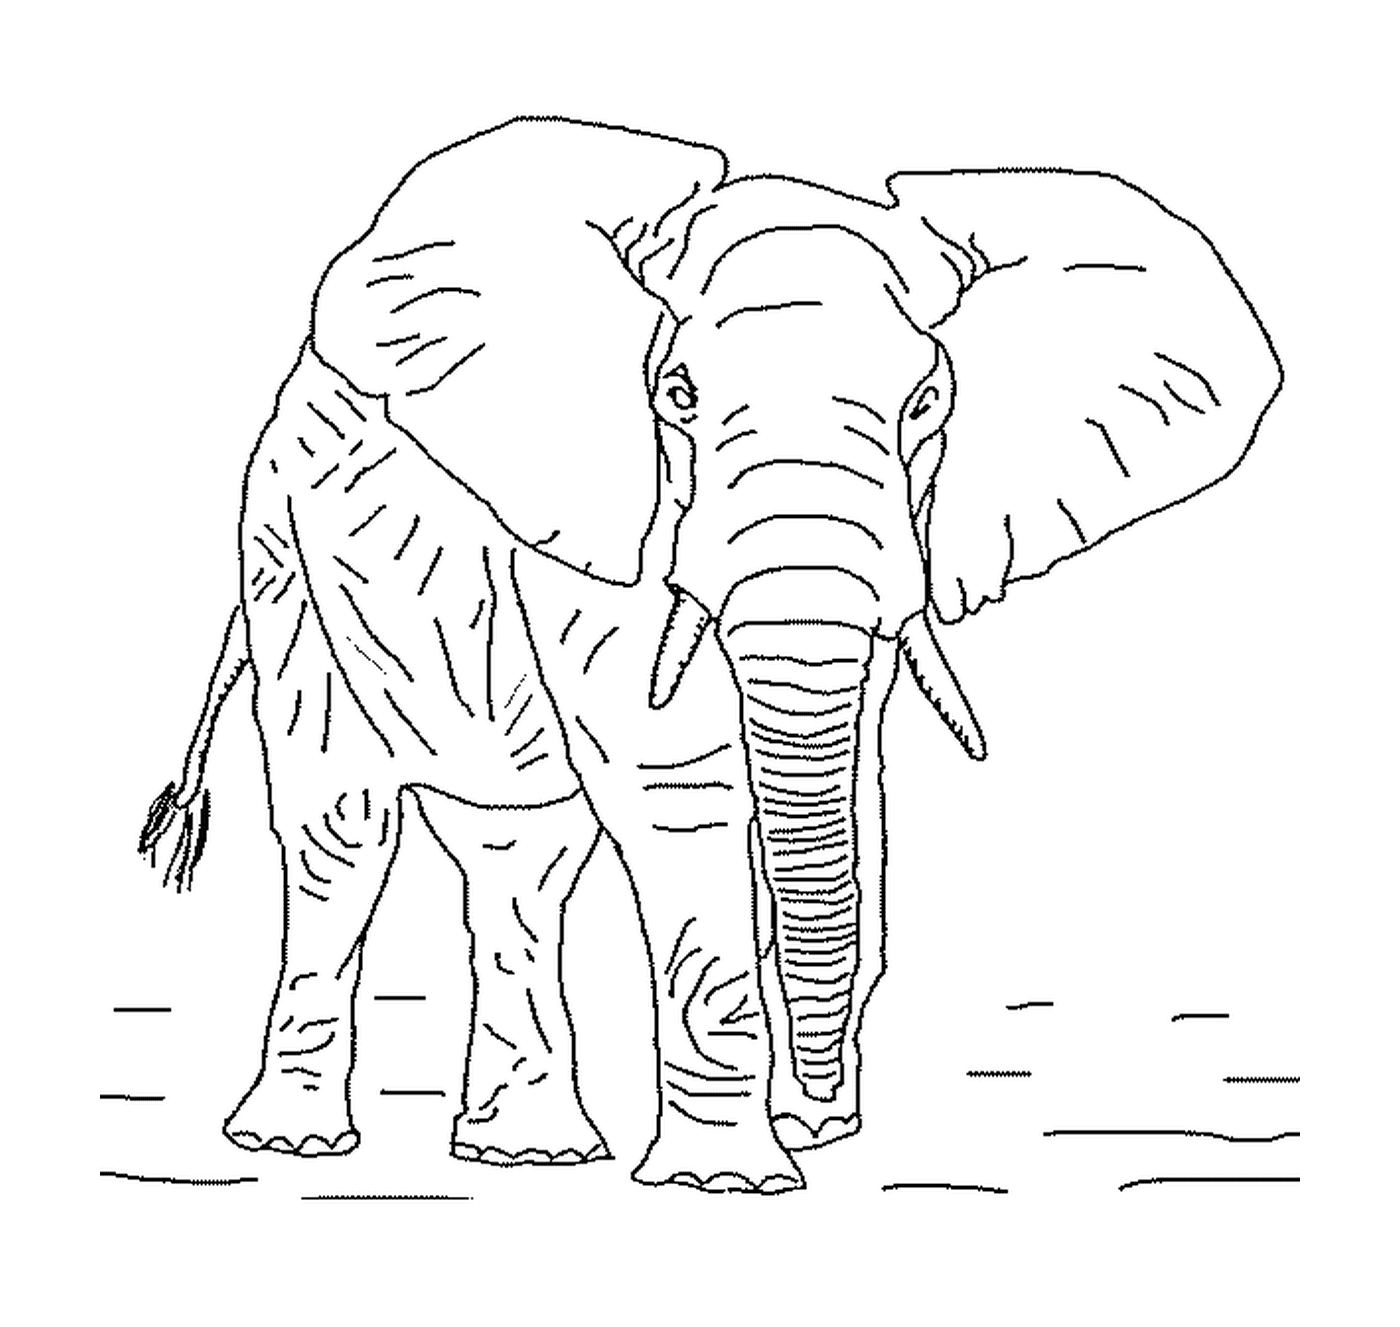  हाथी के साथ एक बड़ा हाथी 